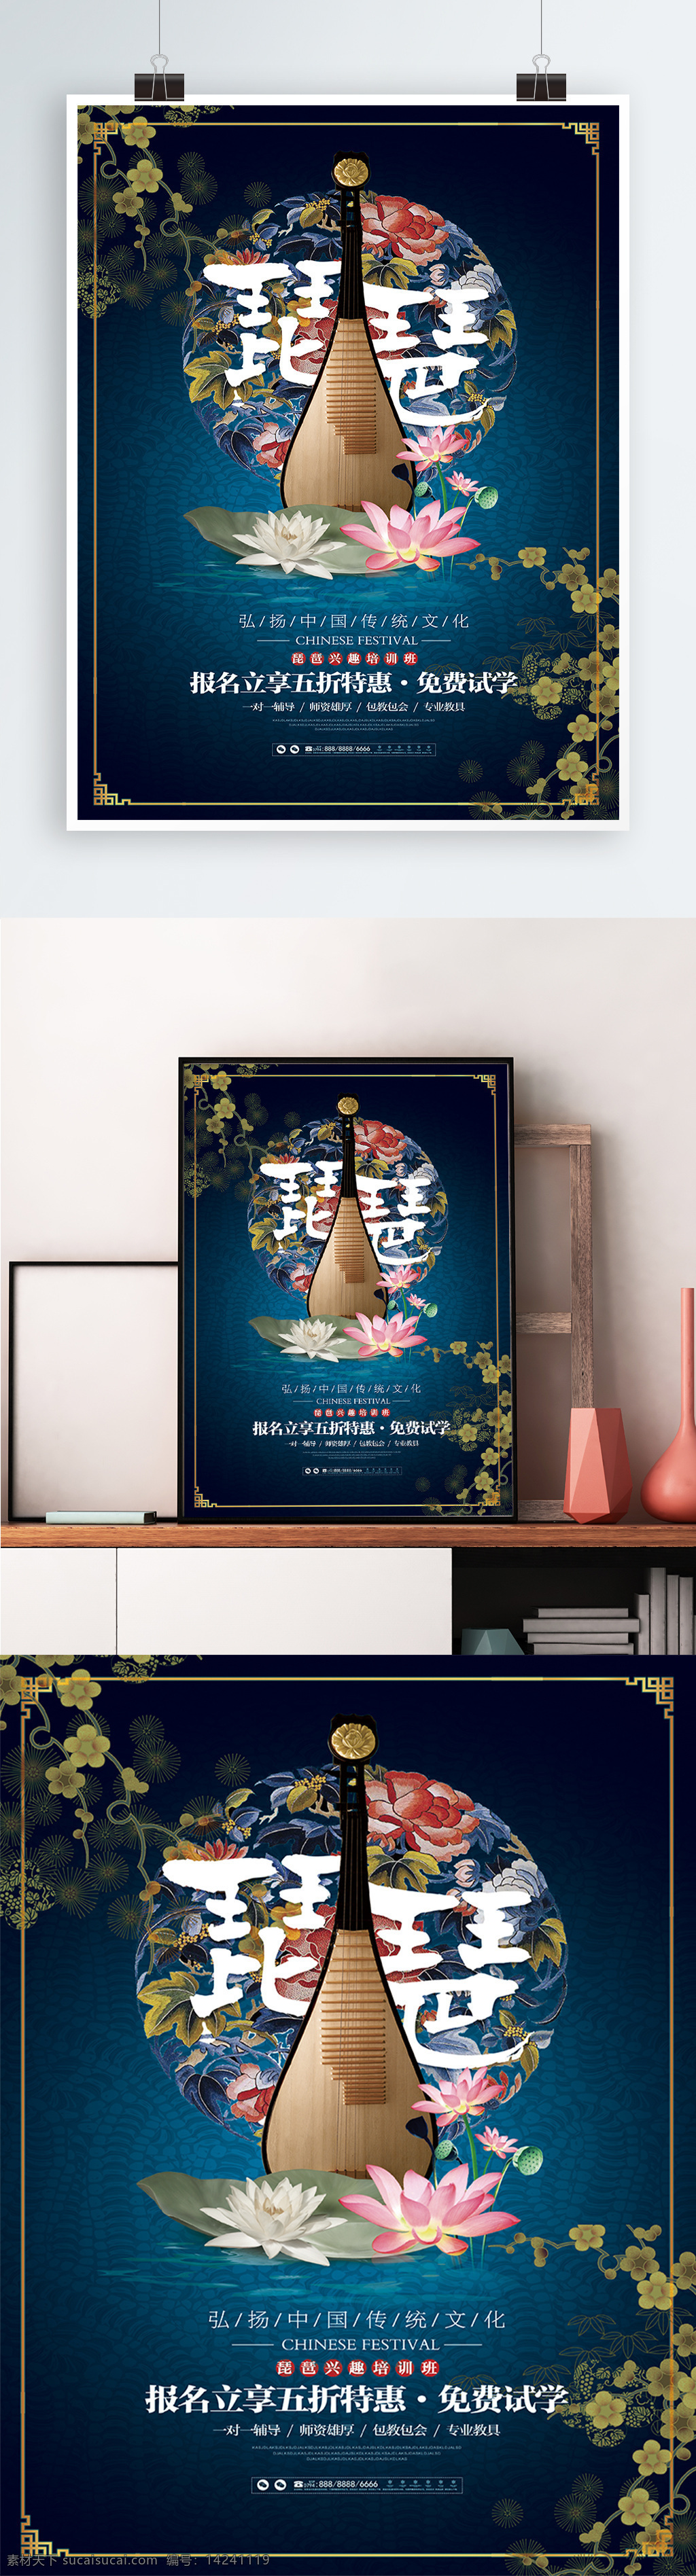 唯美 琵琶 兴趣 培训 学习班 宣传海报 展板 中国风 兴趣班 培训班 乐器 音乐 宣传 海报